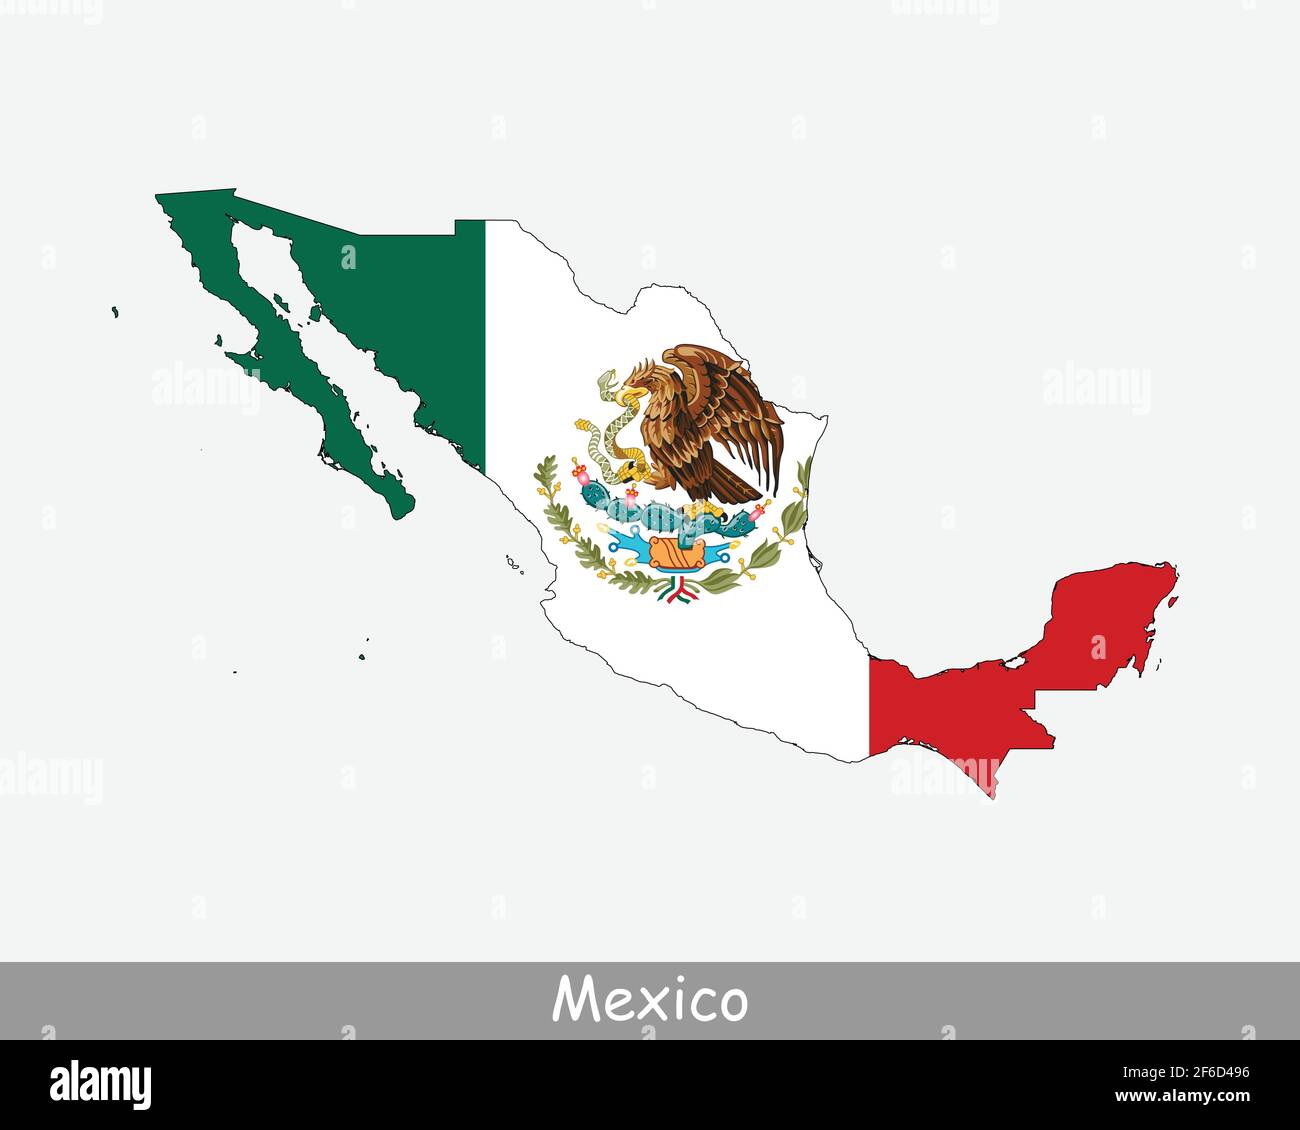 Bandiera della mappa del Messico. Mappa degli Stati Uniti messicani con la bandiera nazionale messicana isolata su sfondo bianco. Illustrazione vettoriale. Illustrazione Vettoriale